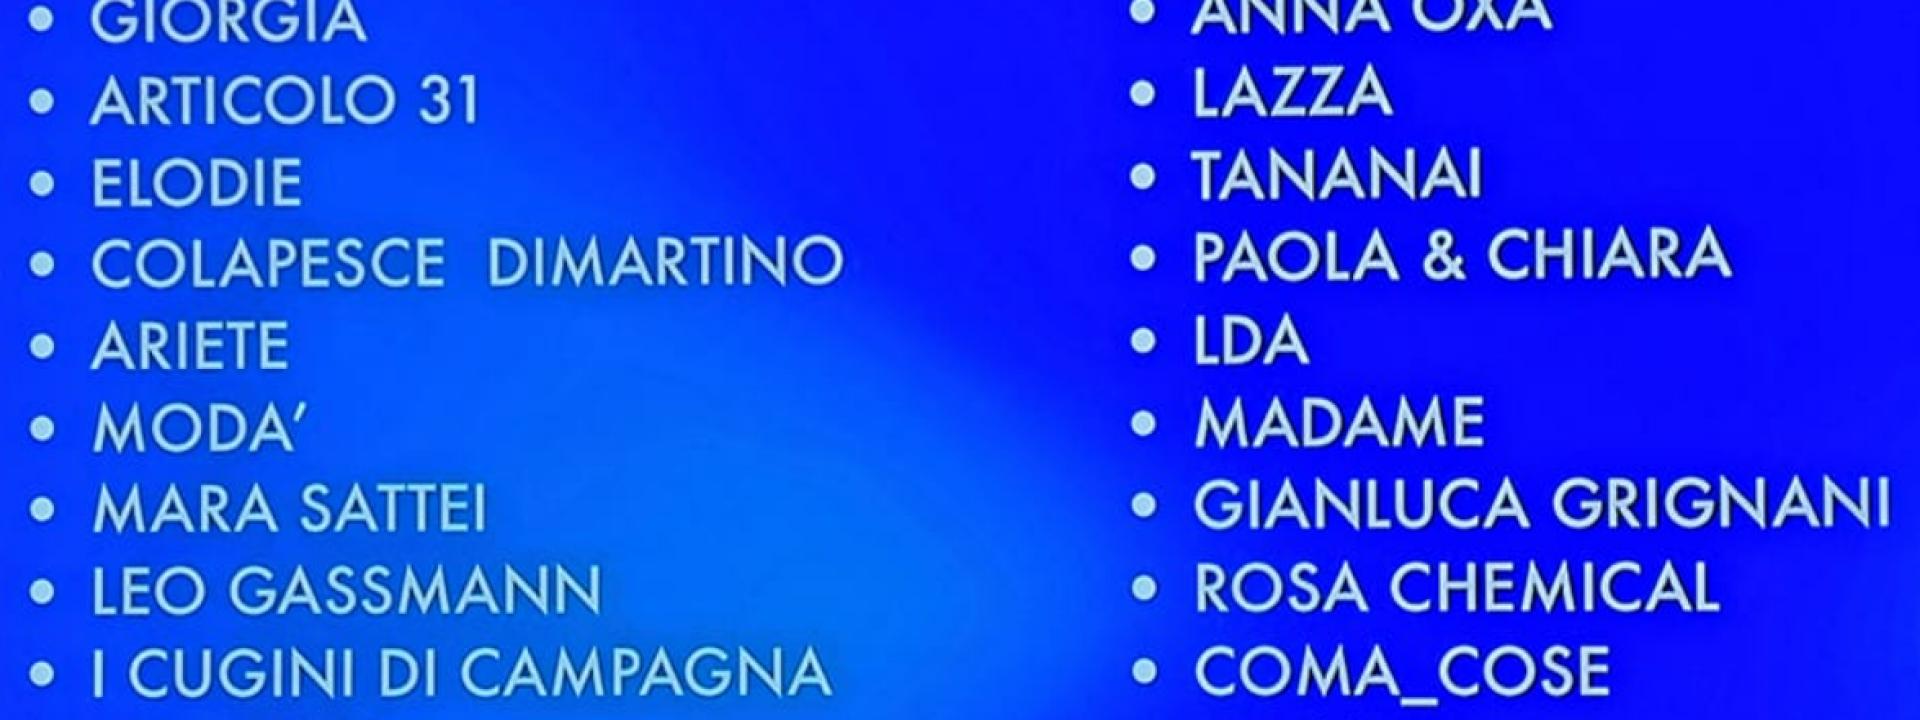 Sanremo 2023, ecco tutti i cantanti in gara: c'è il ritorno di Grignani